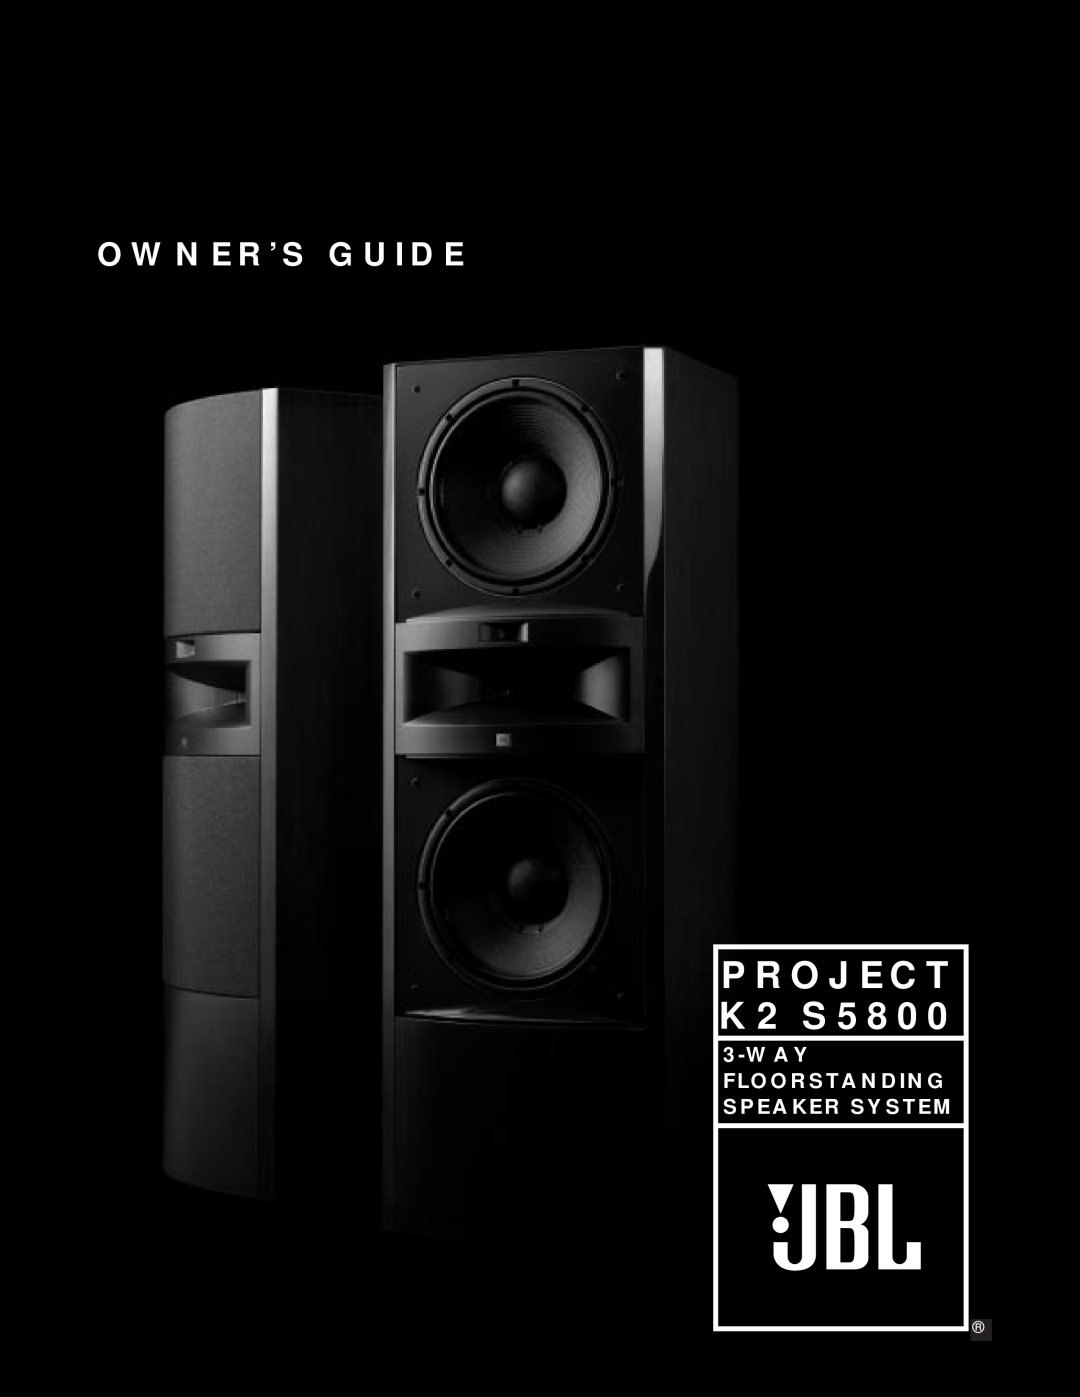 JBL manual PROJECT K2 S5800, Owner’S Guide, Wayfloorstanding Speaker System 